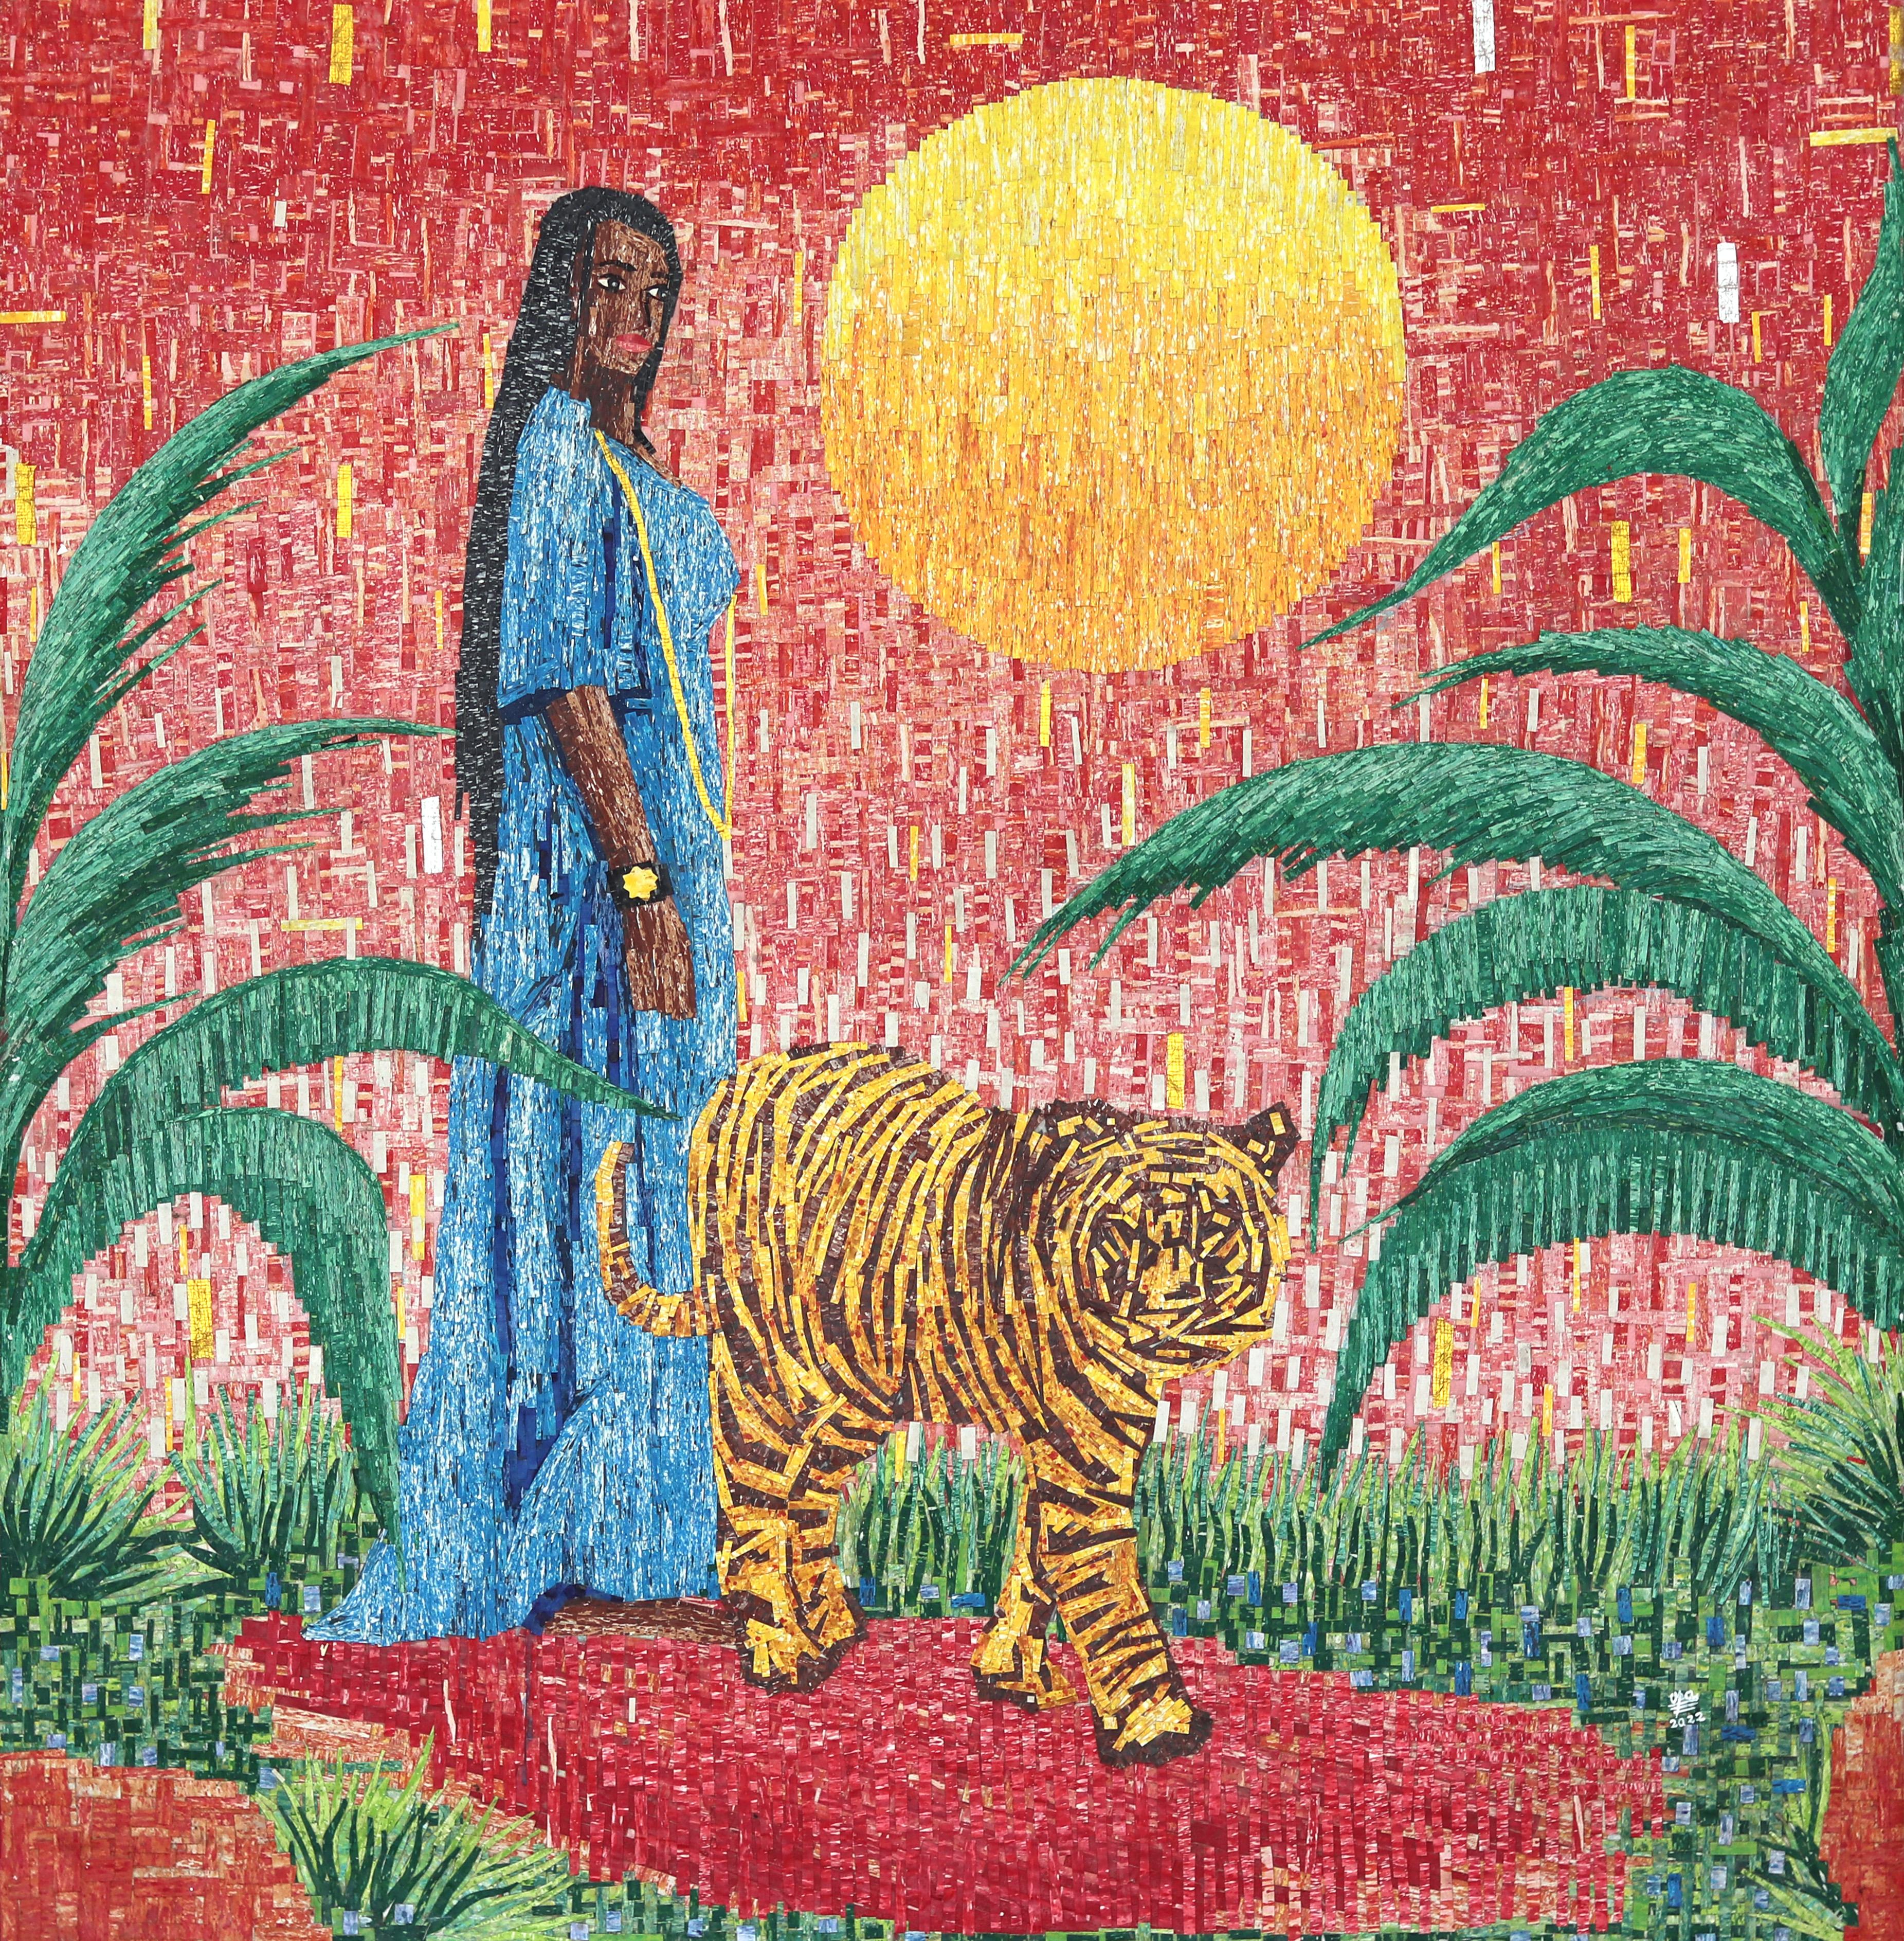 Amadou Opa Bathily Portrait Painting - La Belle Et La Bete - Colorful Figurative Mixed Media Texture Artwork on Canvas